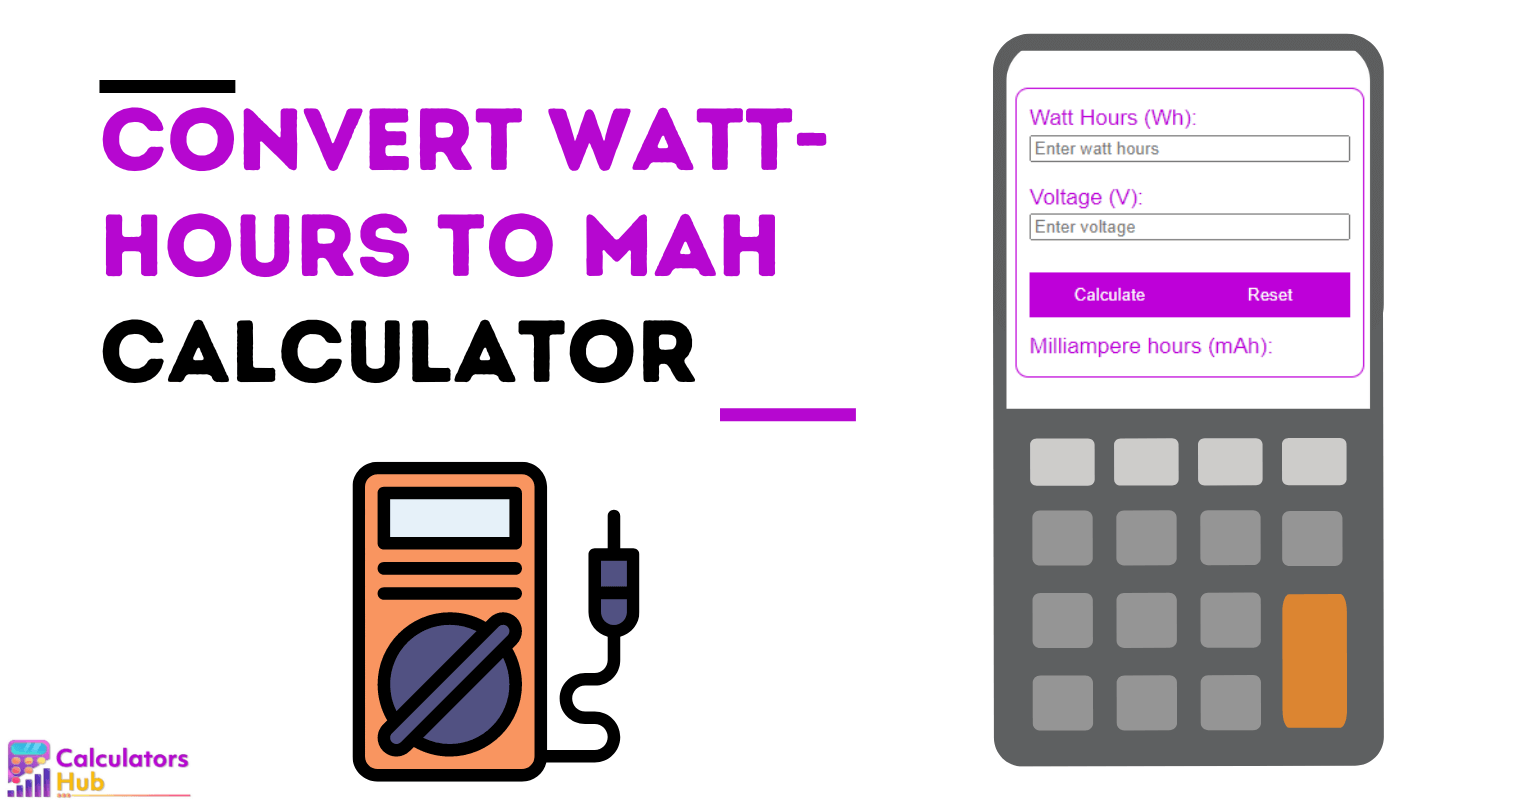 Convert Watt-Hours to mAH Calculator